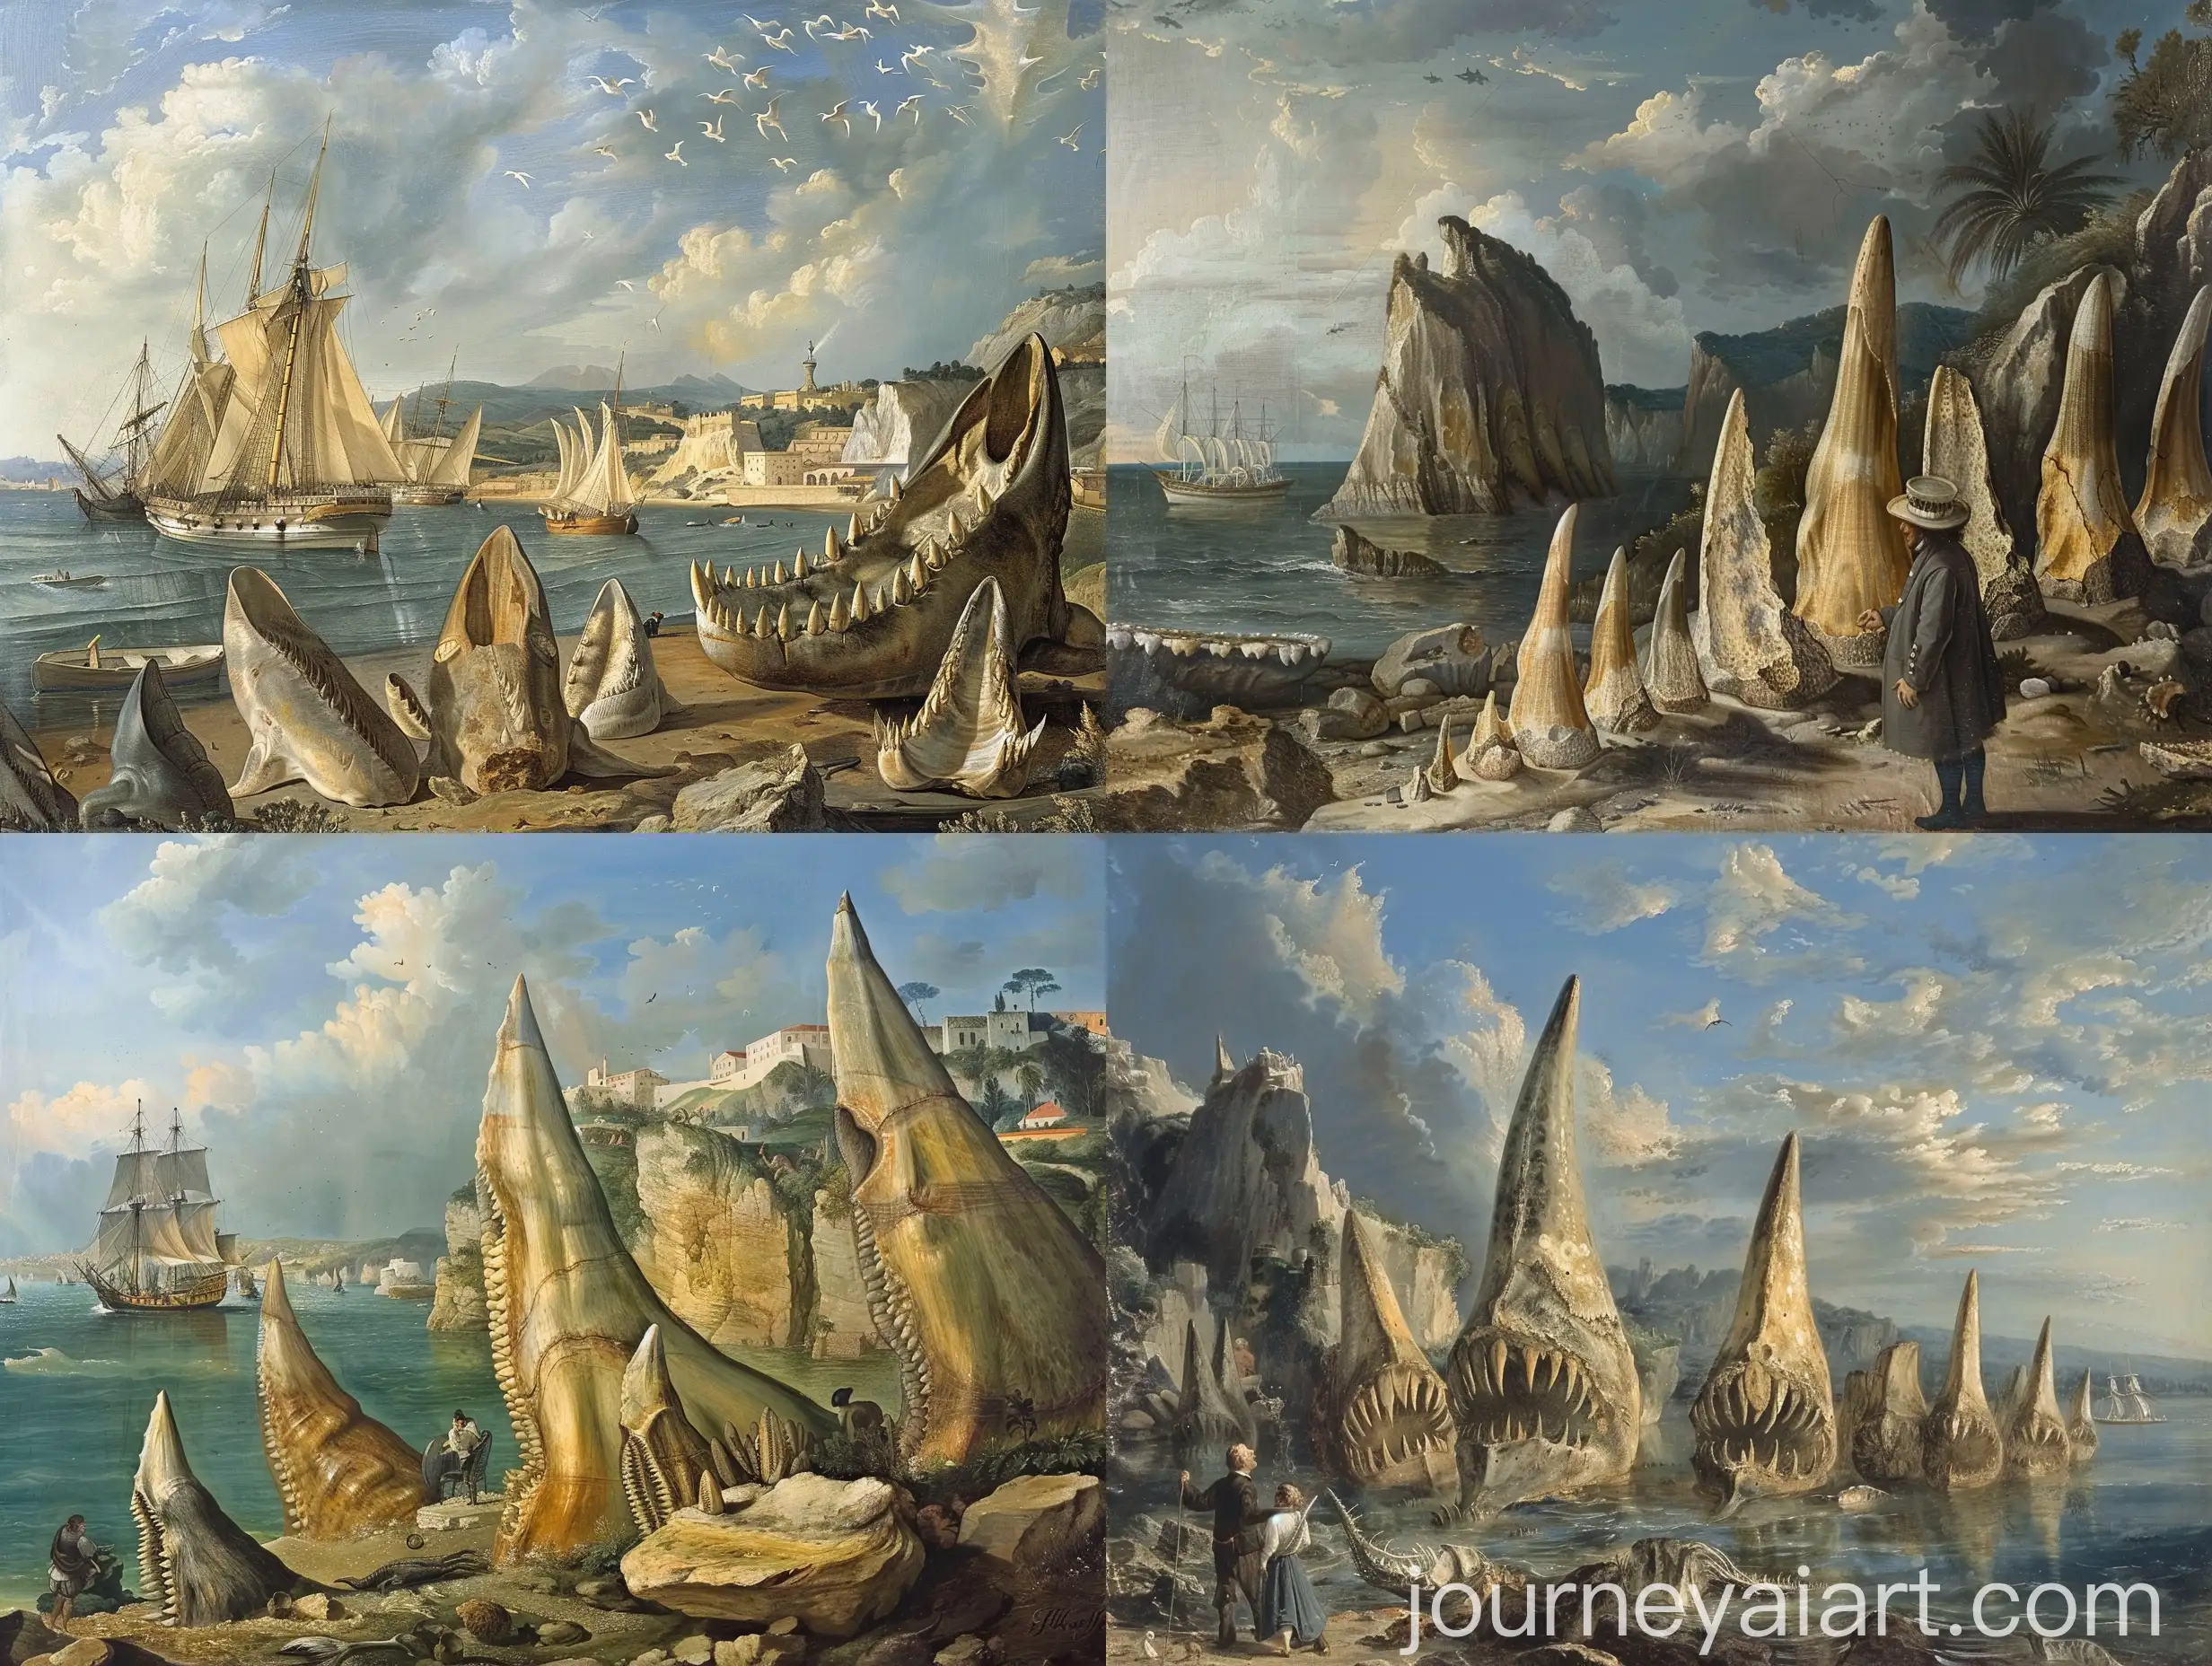 17世纪的博物学家尼尔斯，正在地中海沿岸的乱石中探索，他发现了几块大型牙齿形状的化石